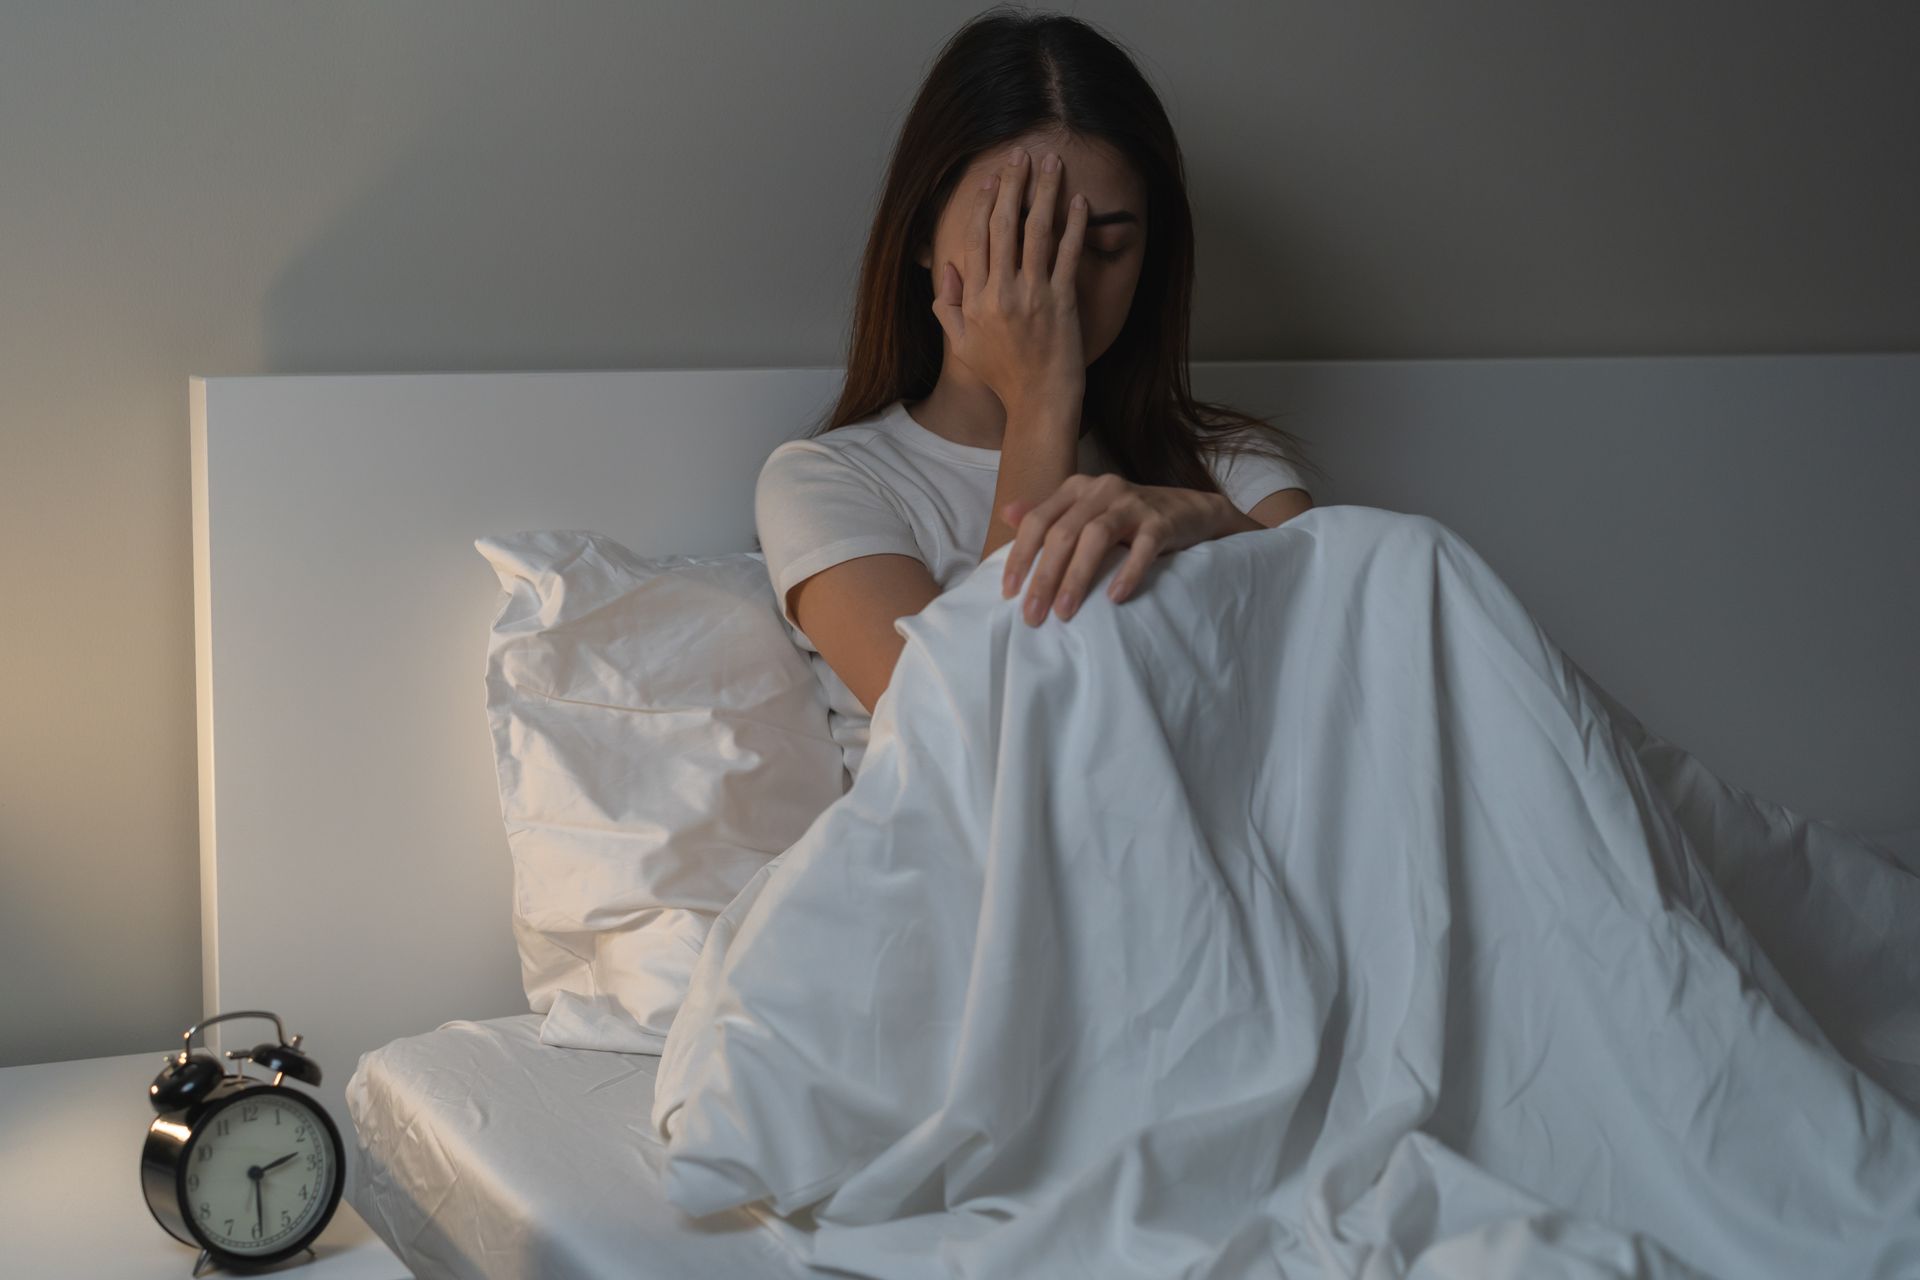 Noites mal dormidas podem prejudicar a saúde oral e geral